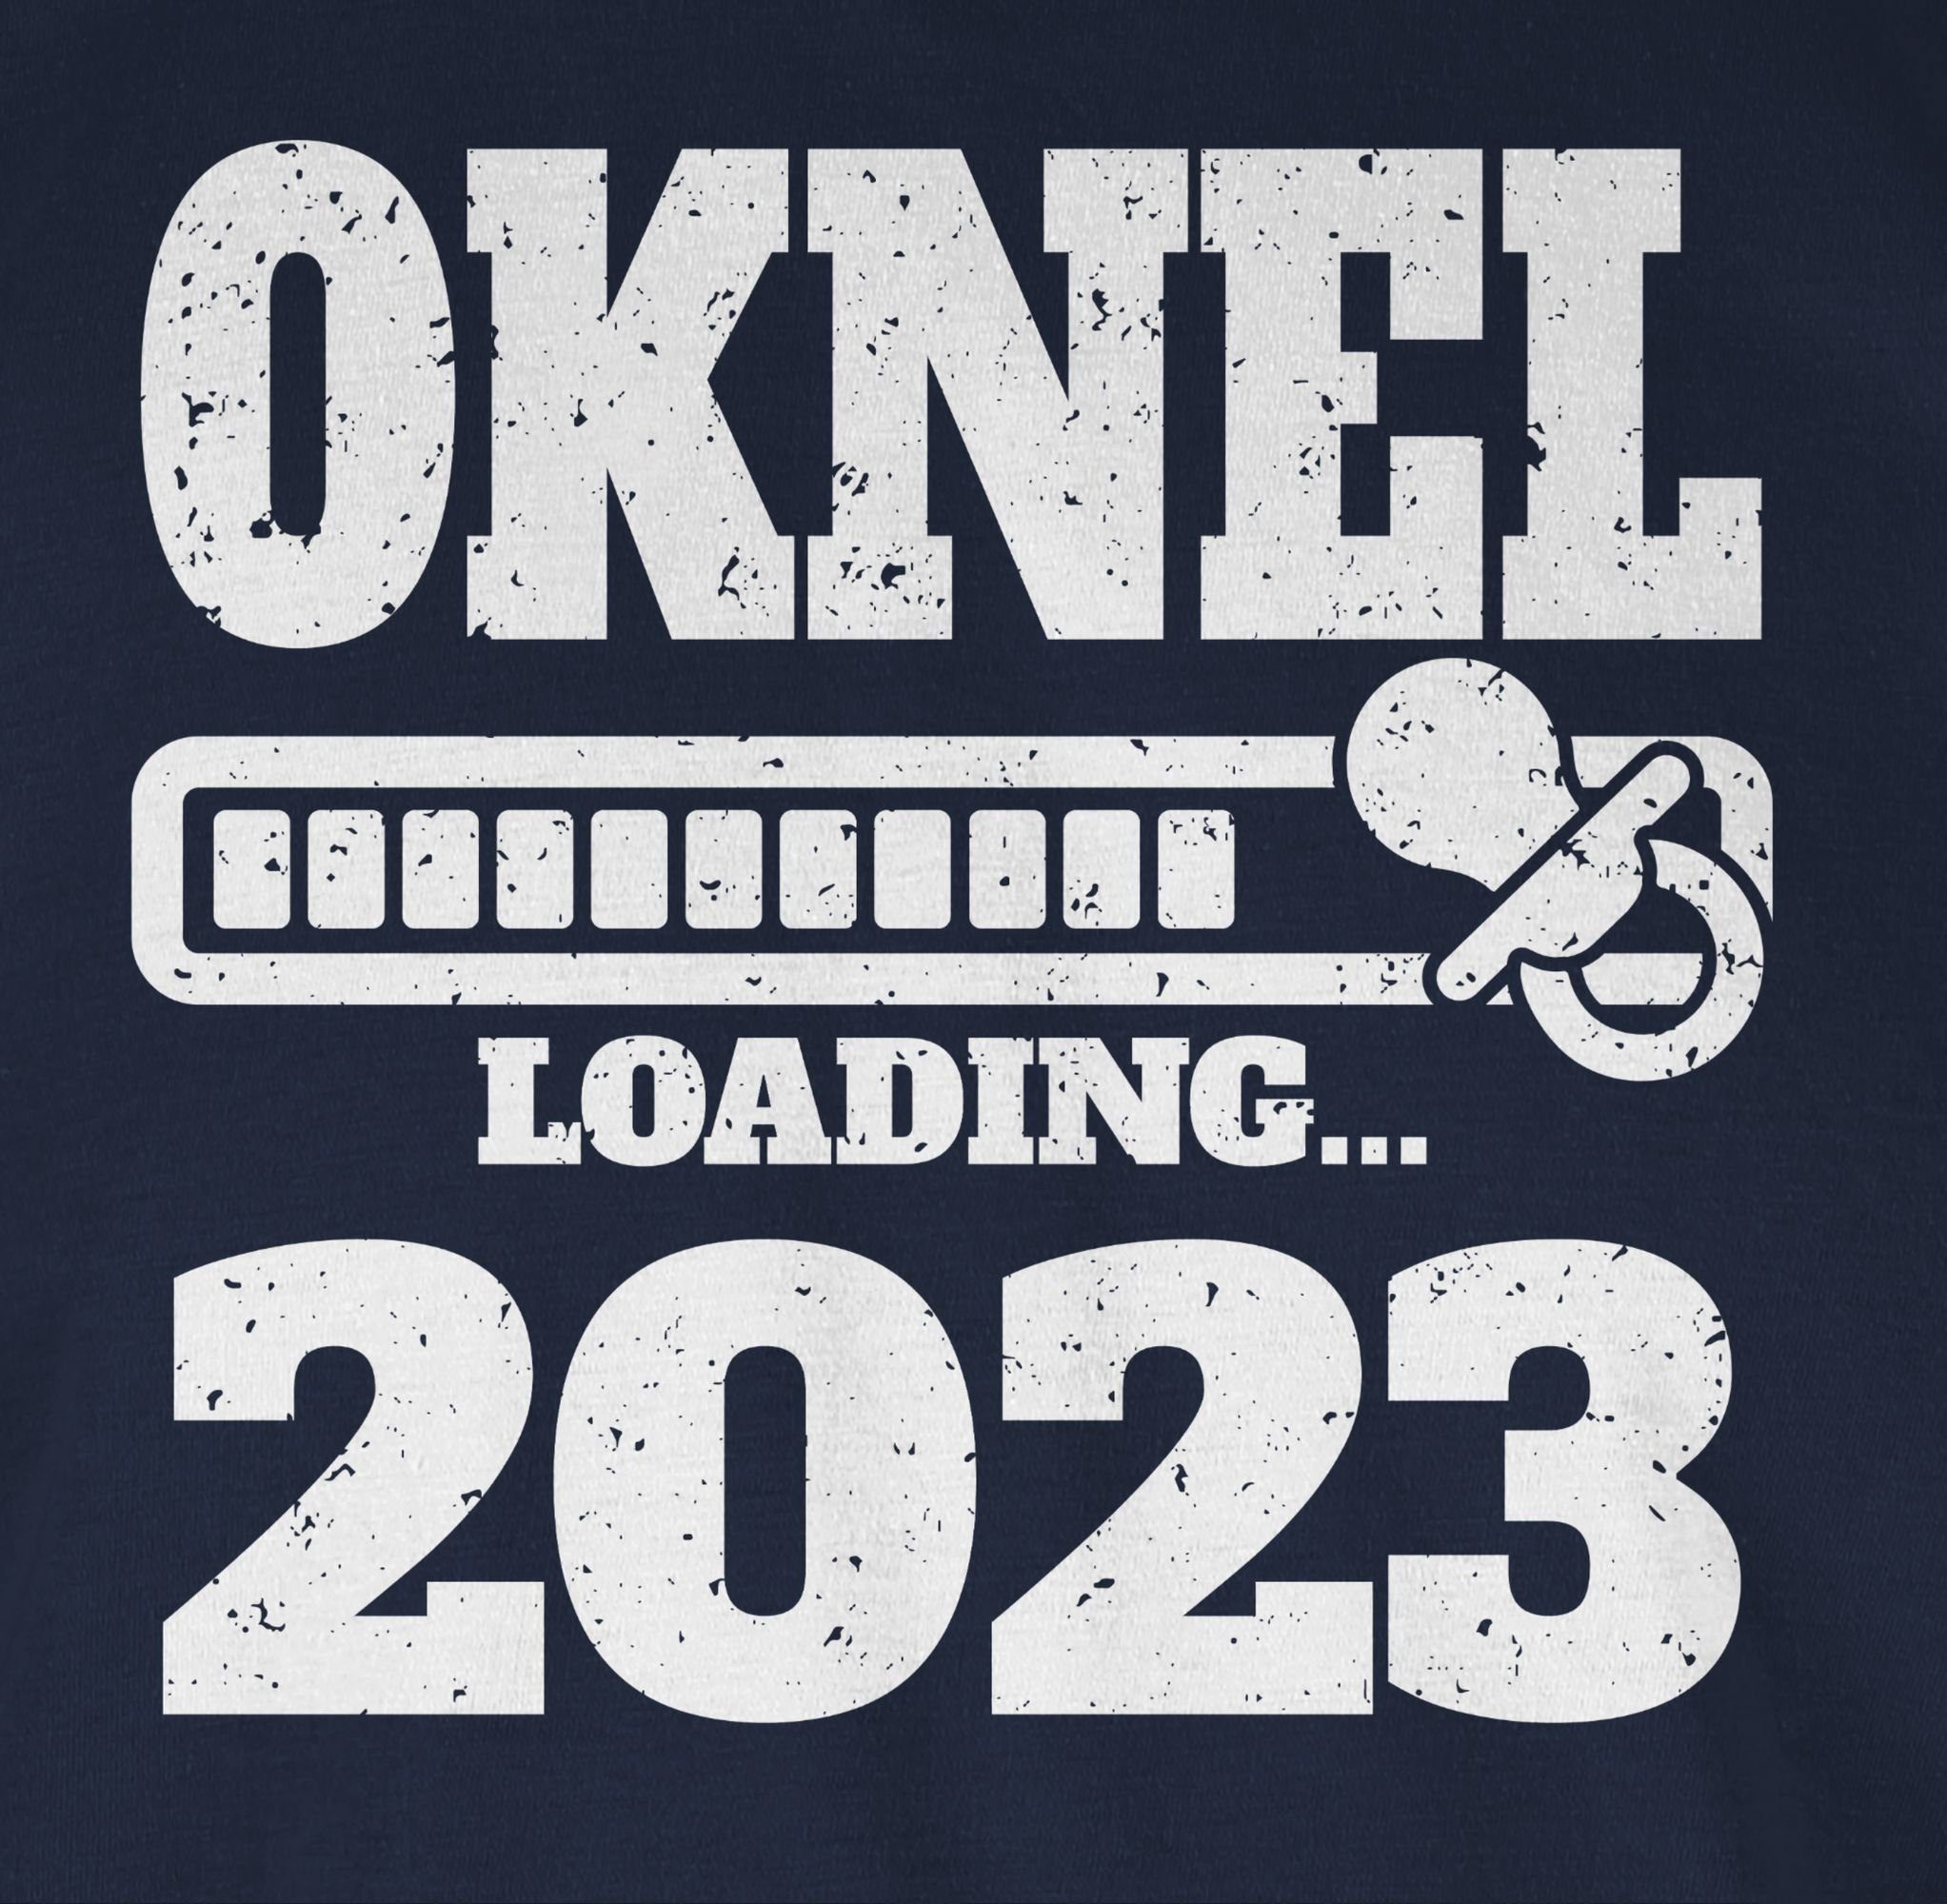 und Onkel Navy T-Shirt loading 3 mit 2023 Schnuller Shirtracer Bruder Onkel Blau Geschenk